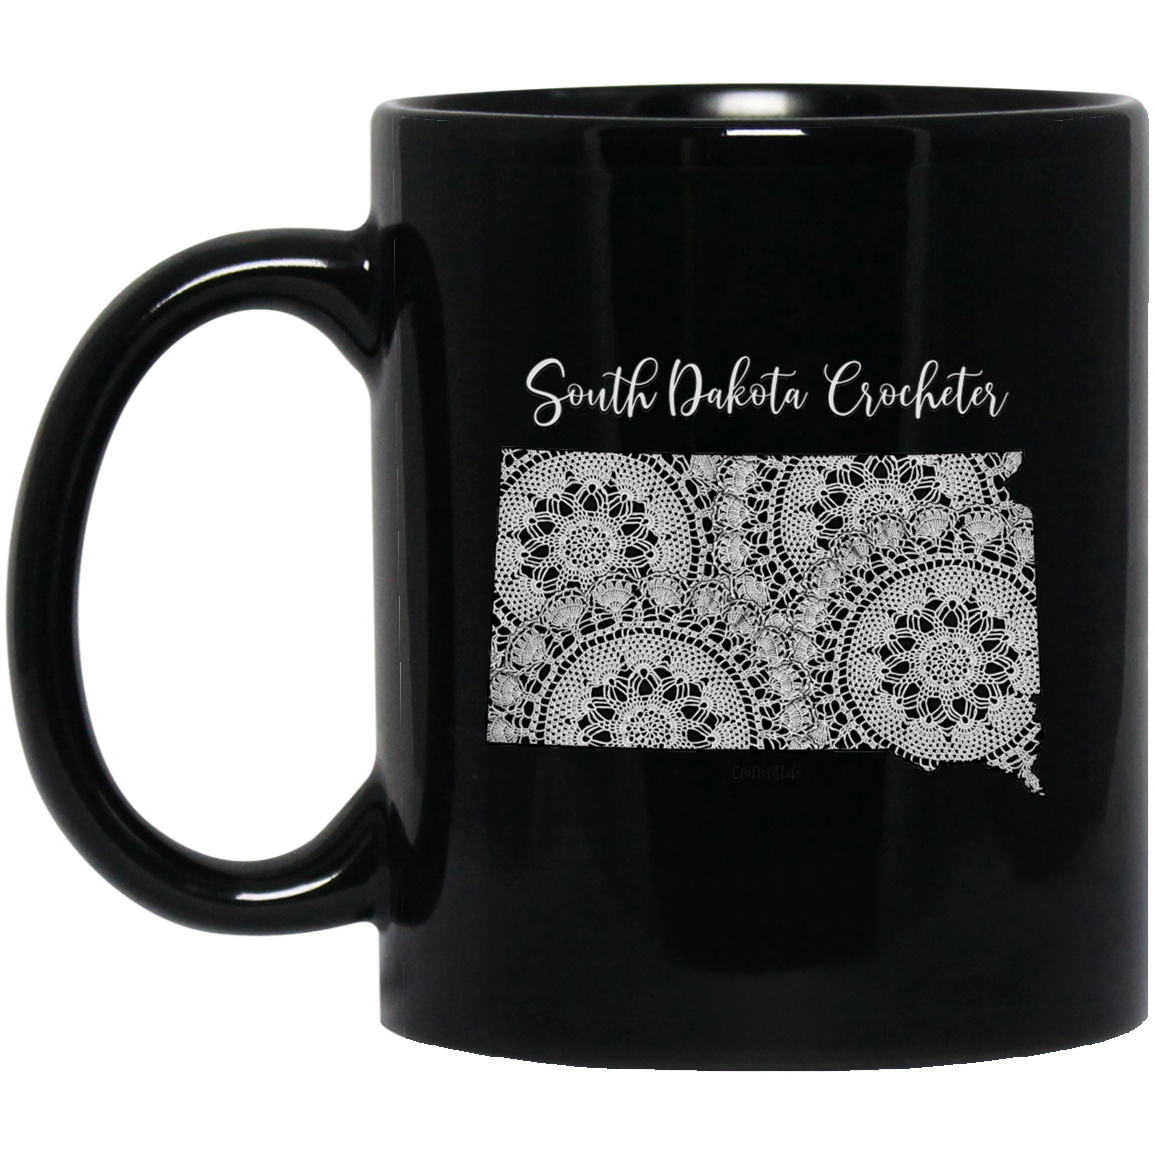 South Dakota Crocheter Black Mugs